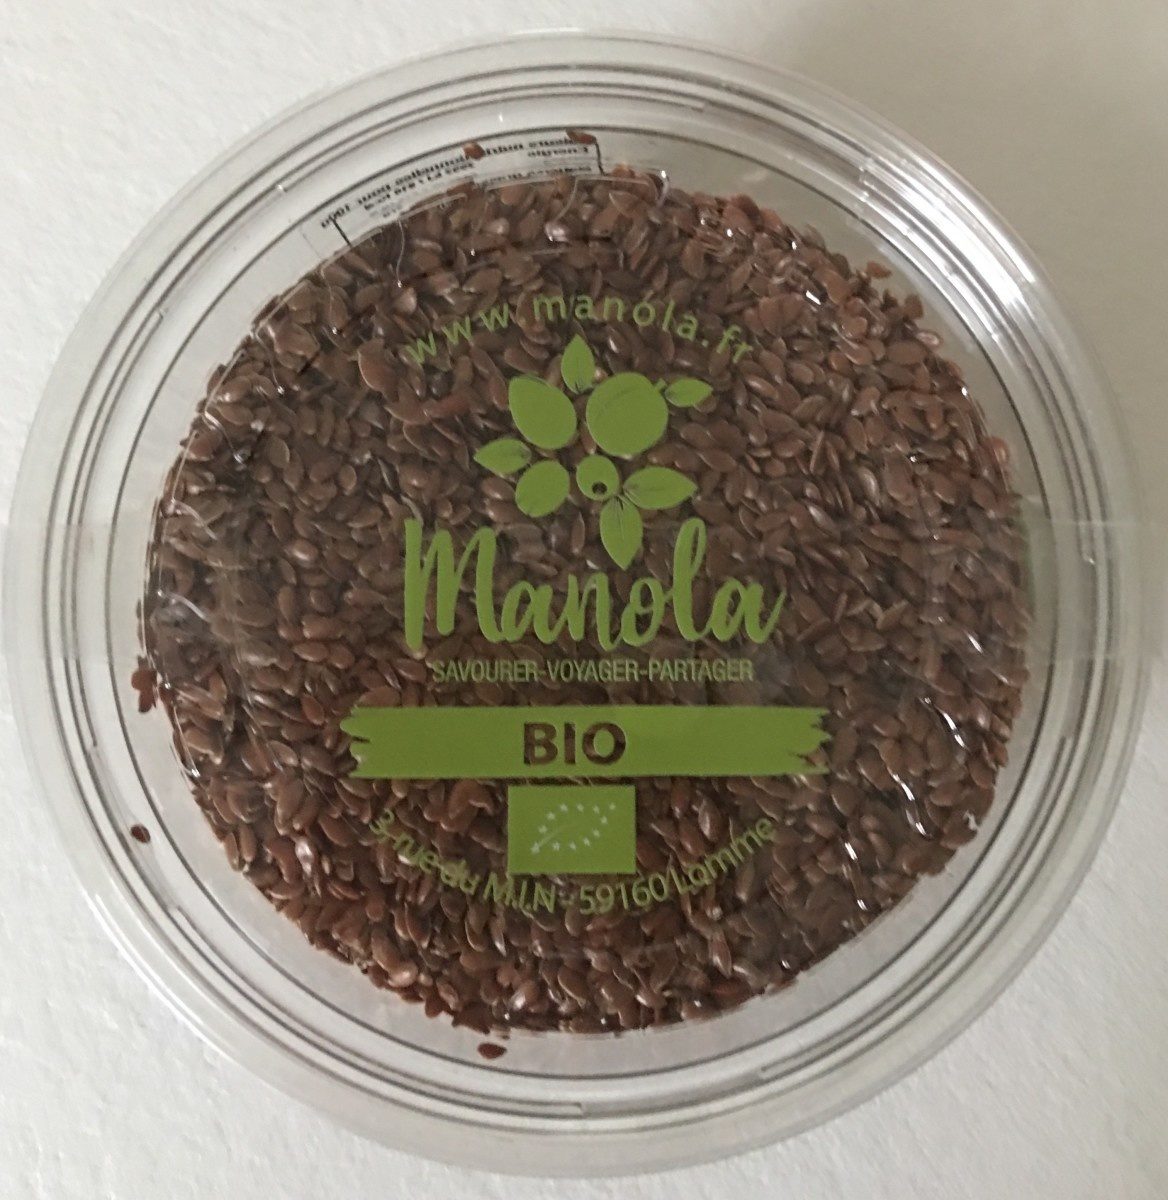 Graine de lin brun bio - Product - fr